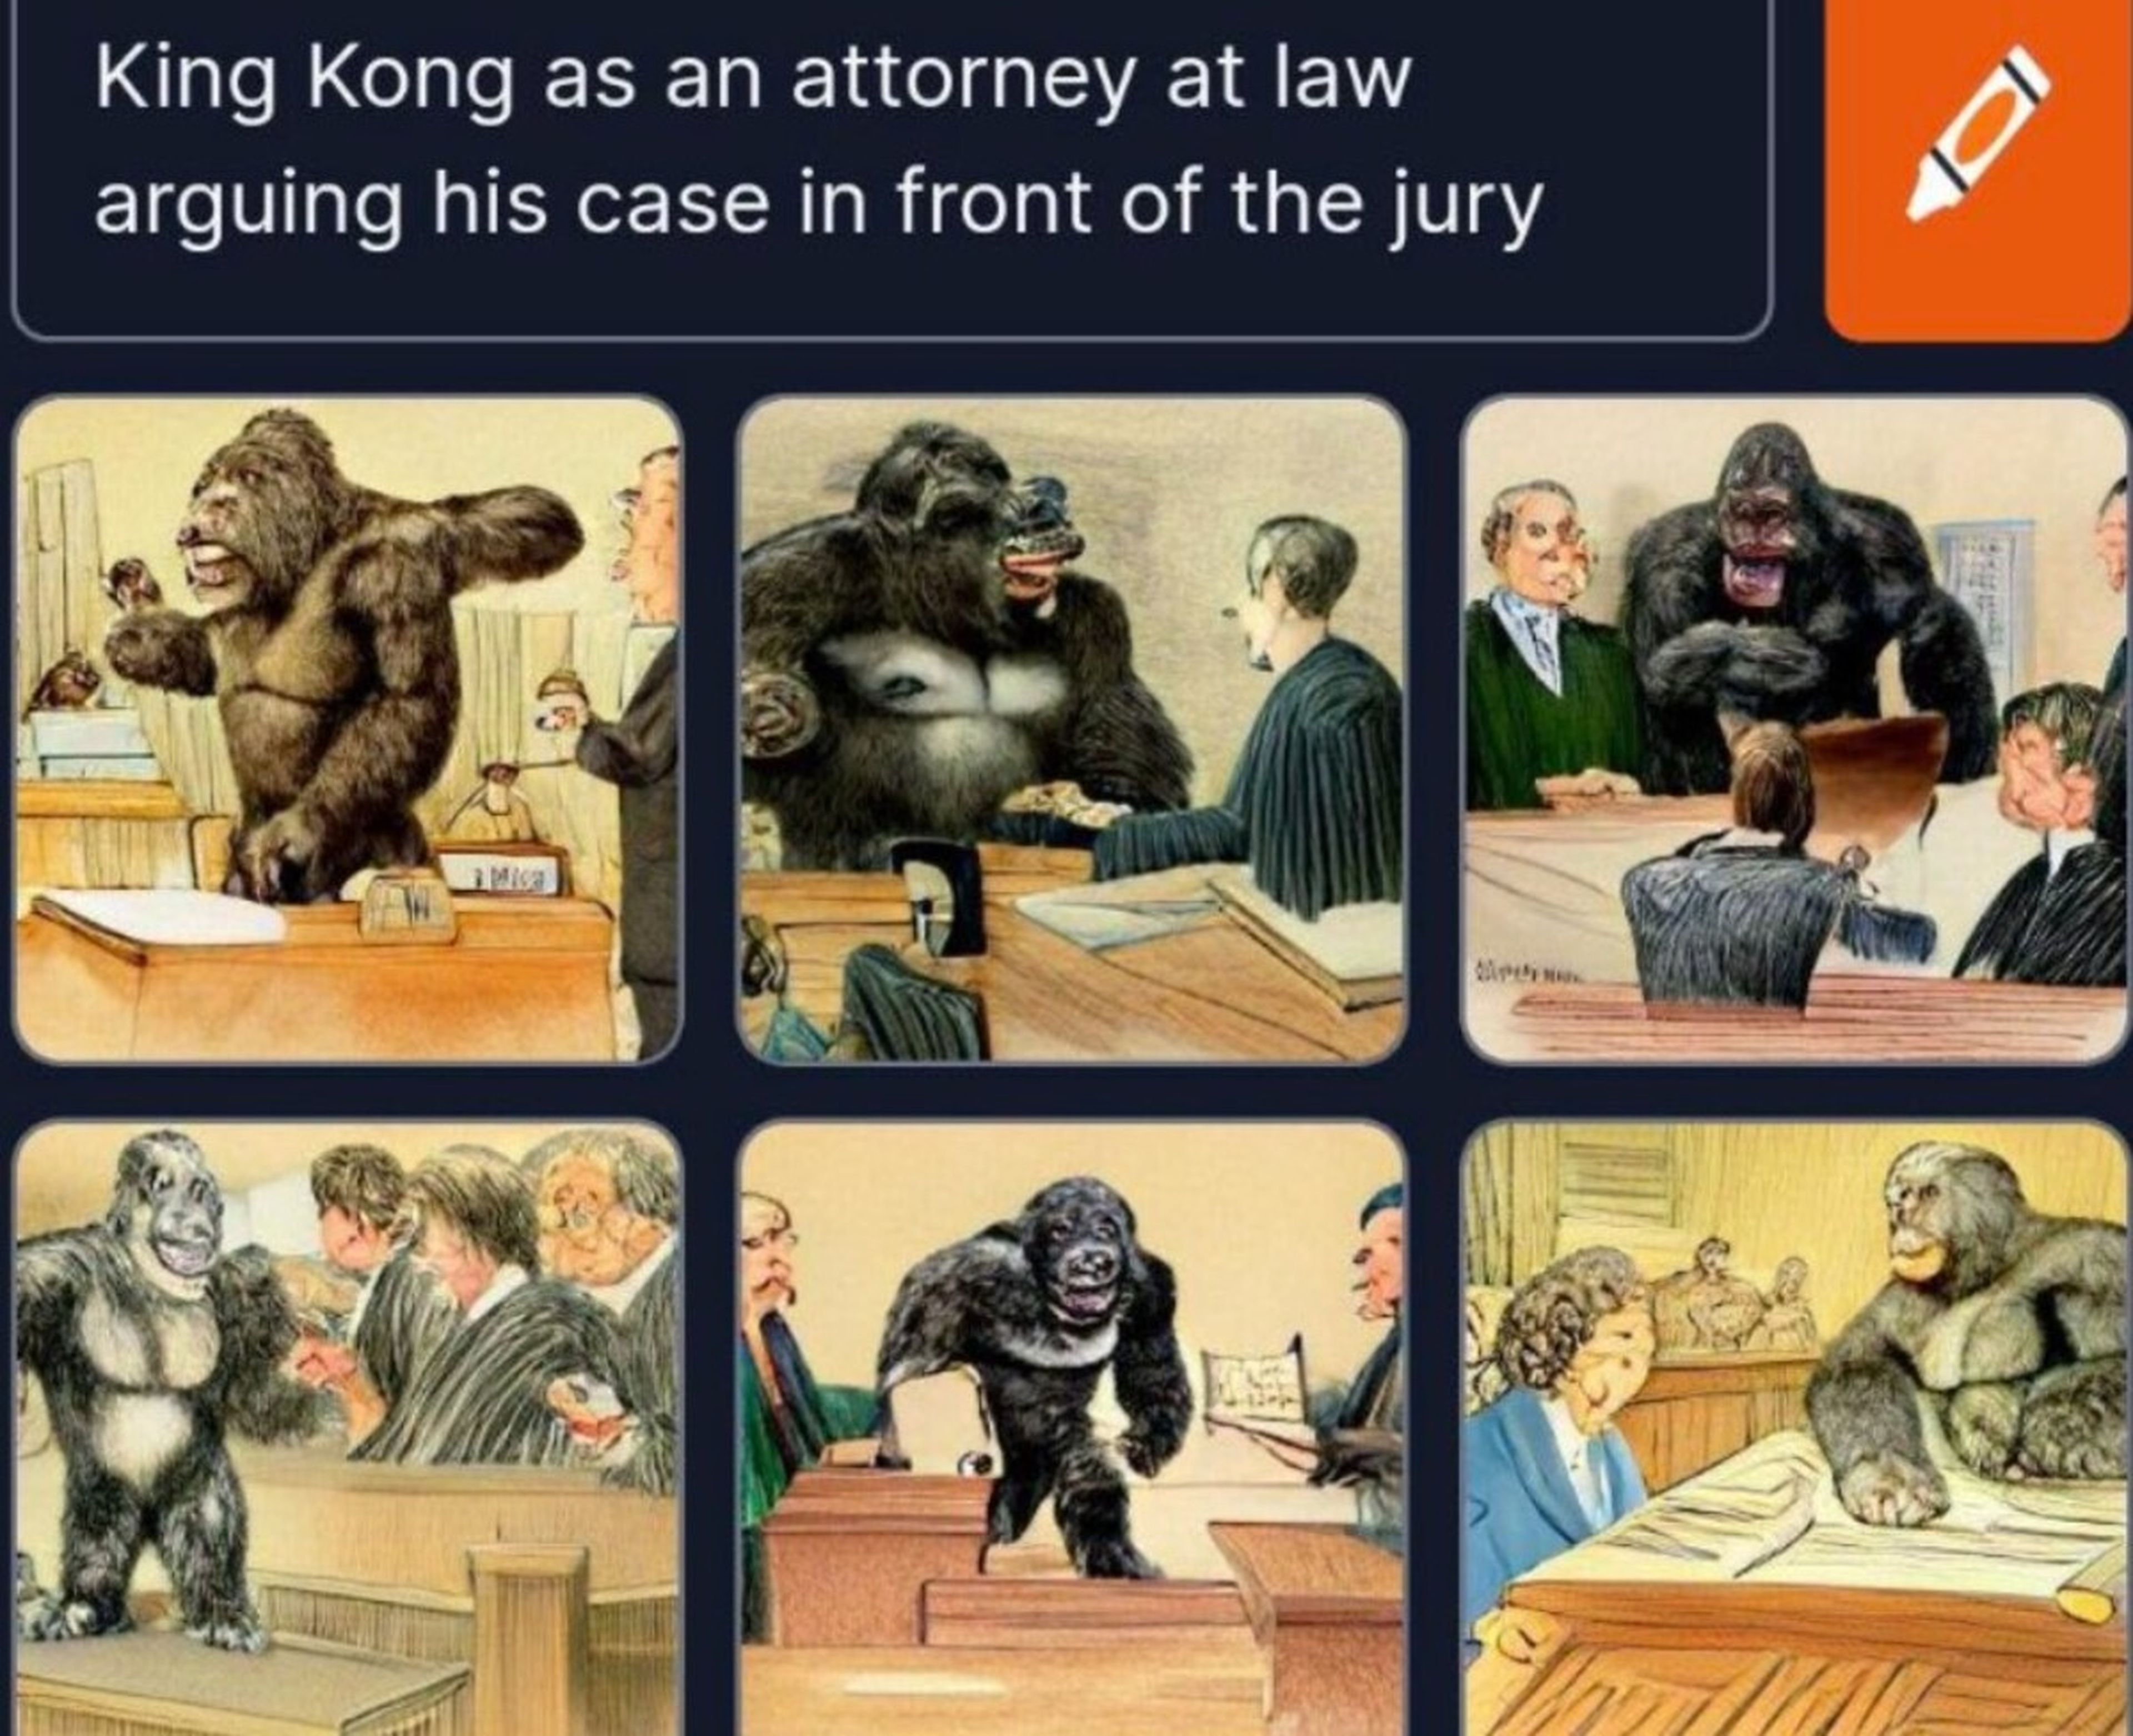 Imagen generada por Craiyon en la que Kink Kong hace de abogado ante un jurado.